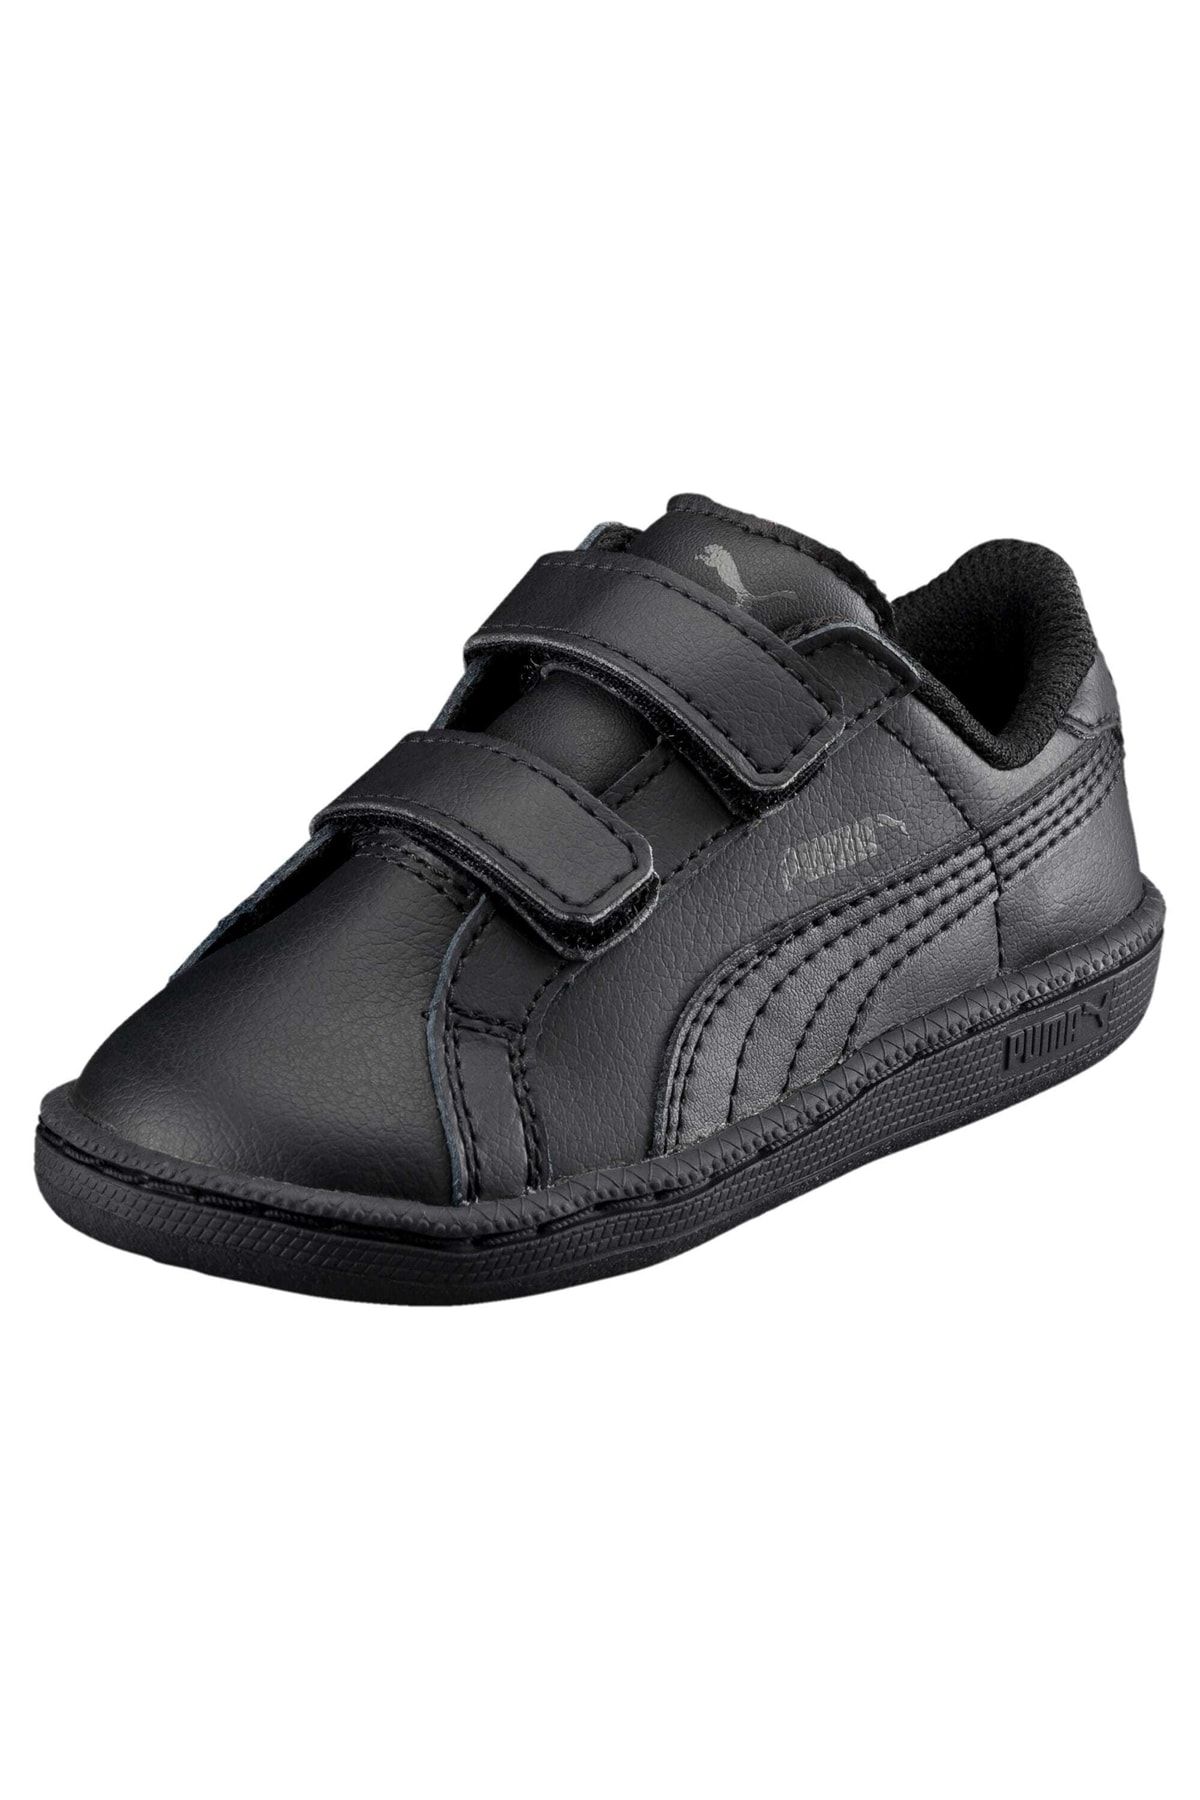 Trendyol Kids Smash - V Puma Leather Shoes